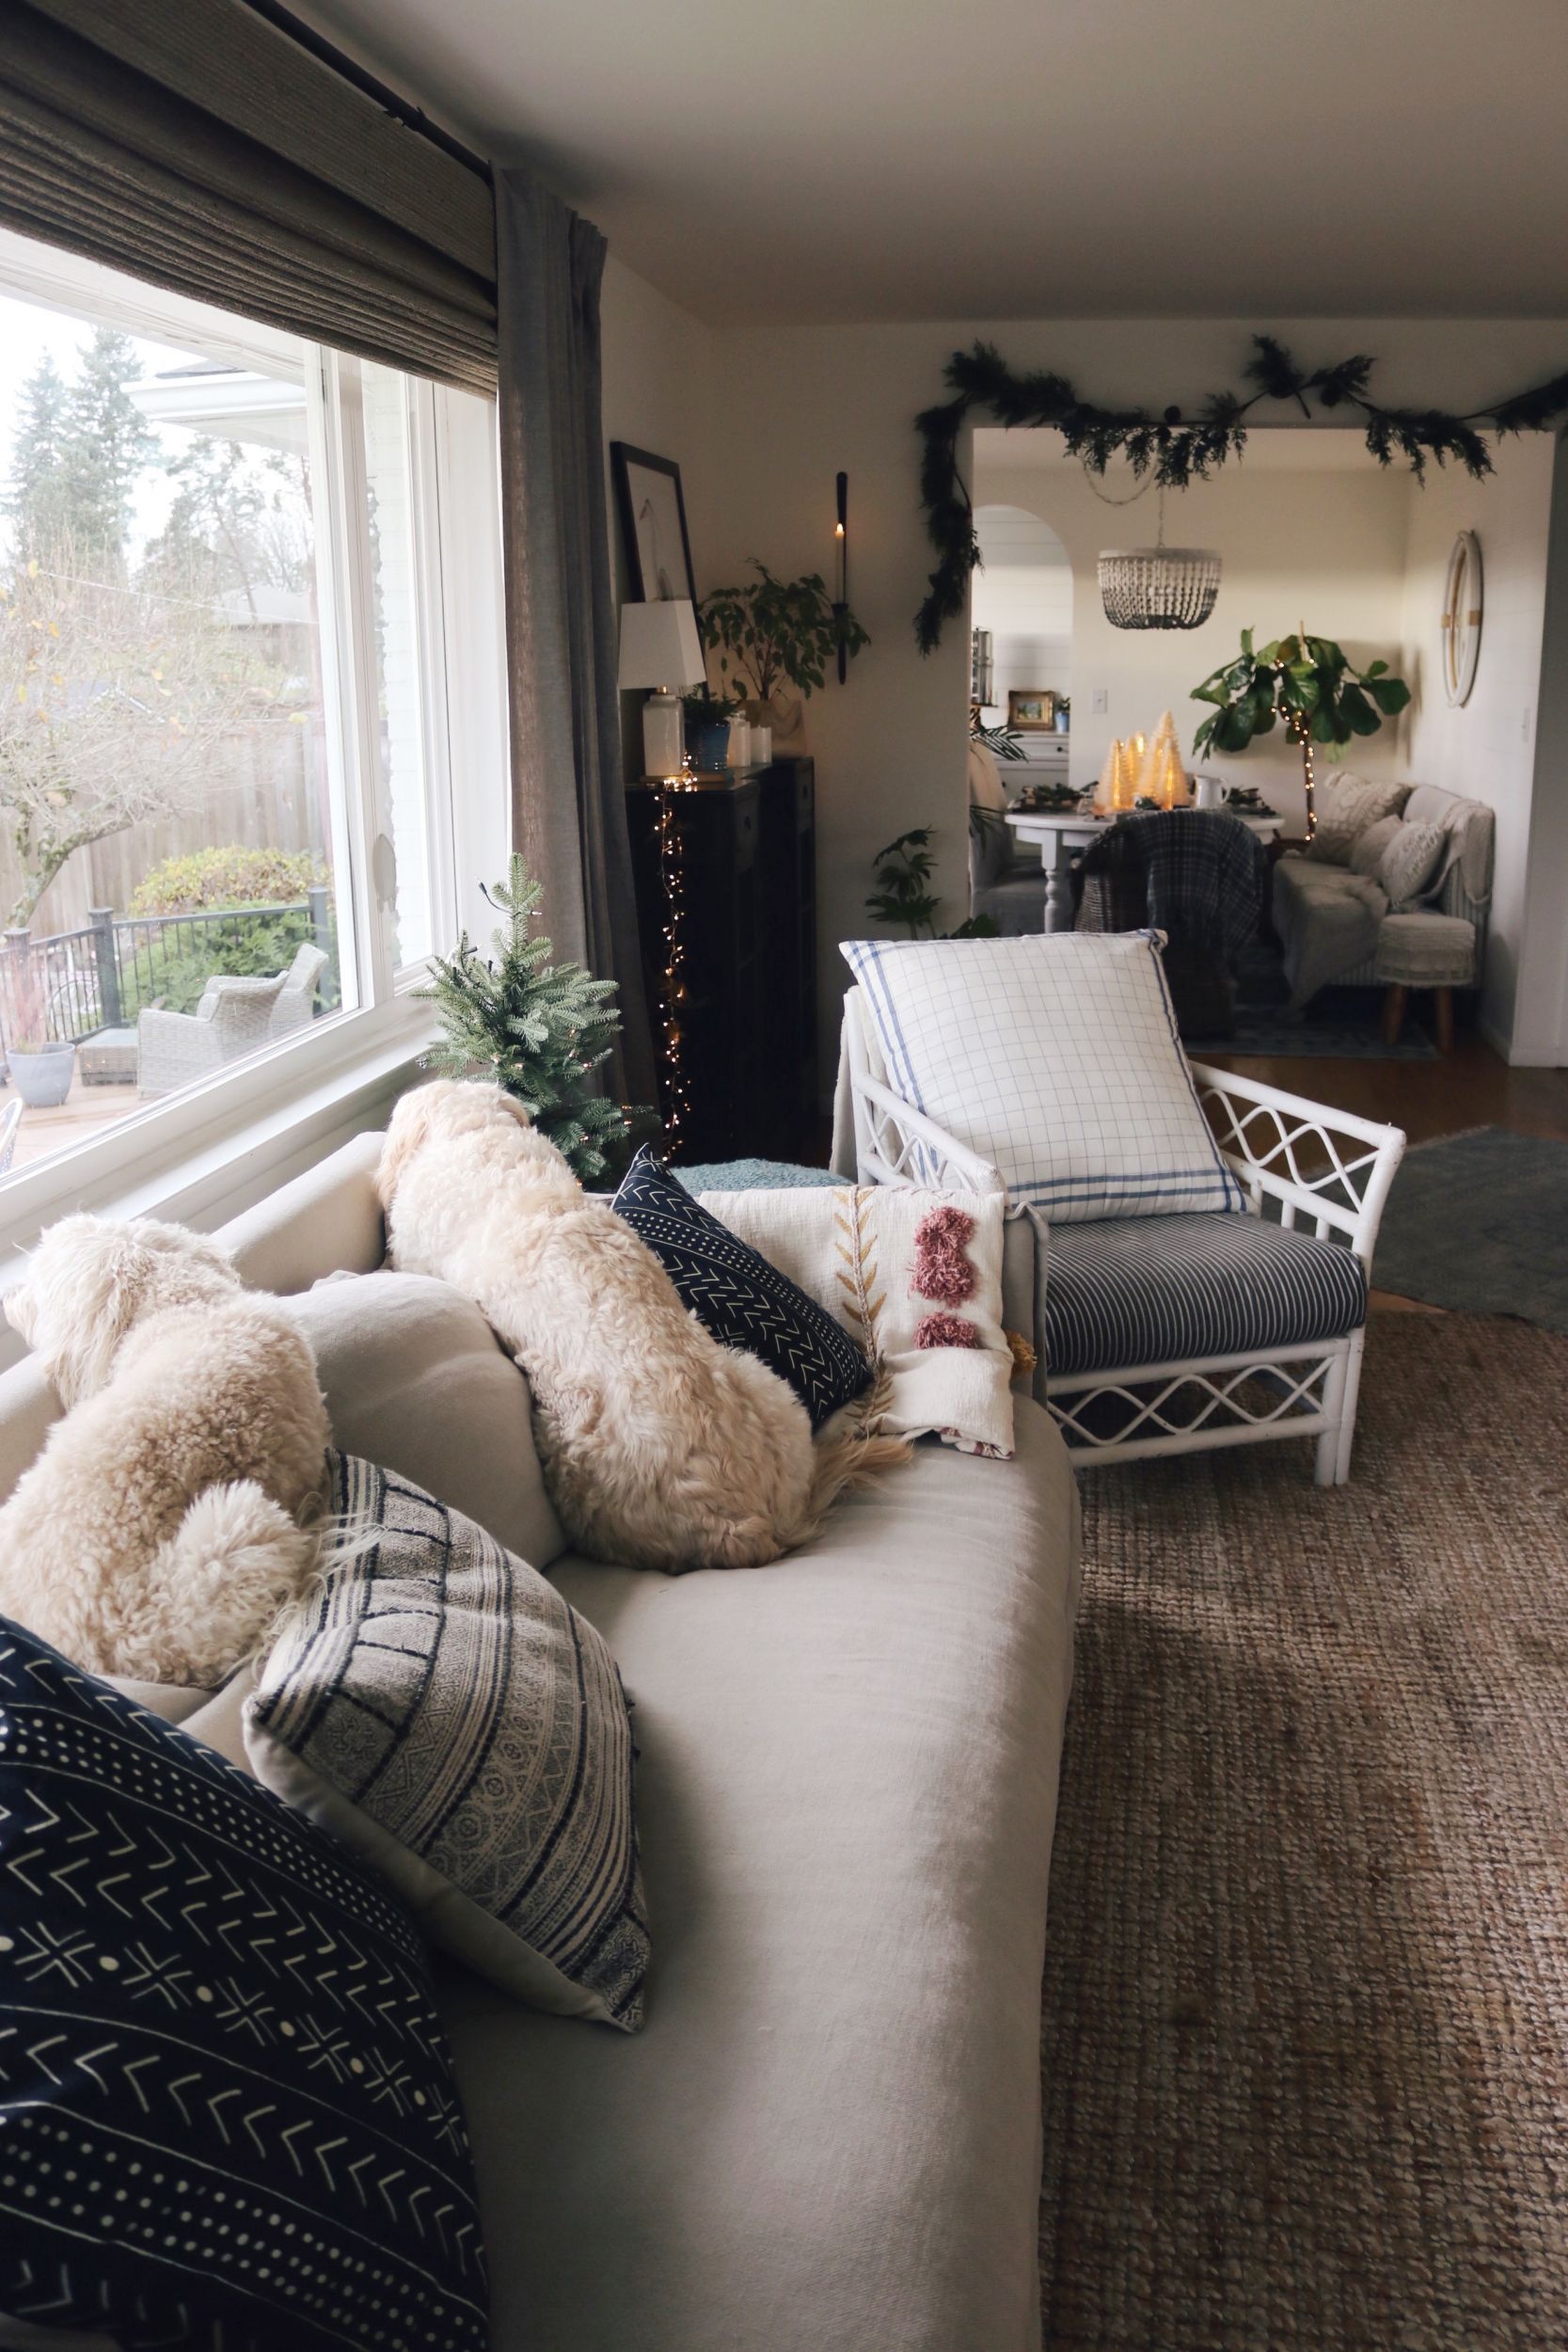 New Linen Slipcovered Sofa In The Living Room! – The Inspired Room Inside Gray Linen Sofas (Photo 15 of 15)